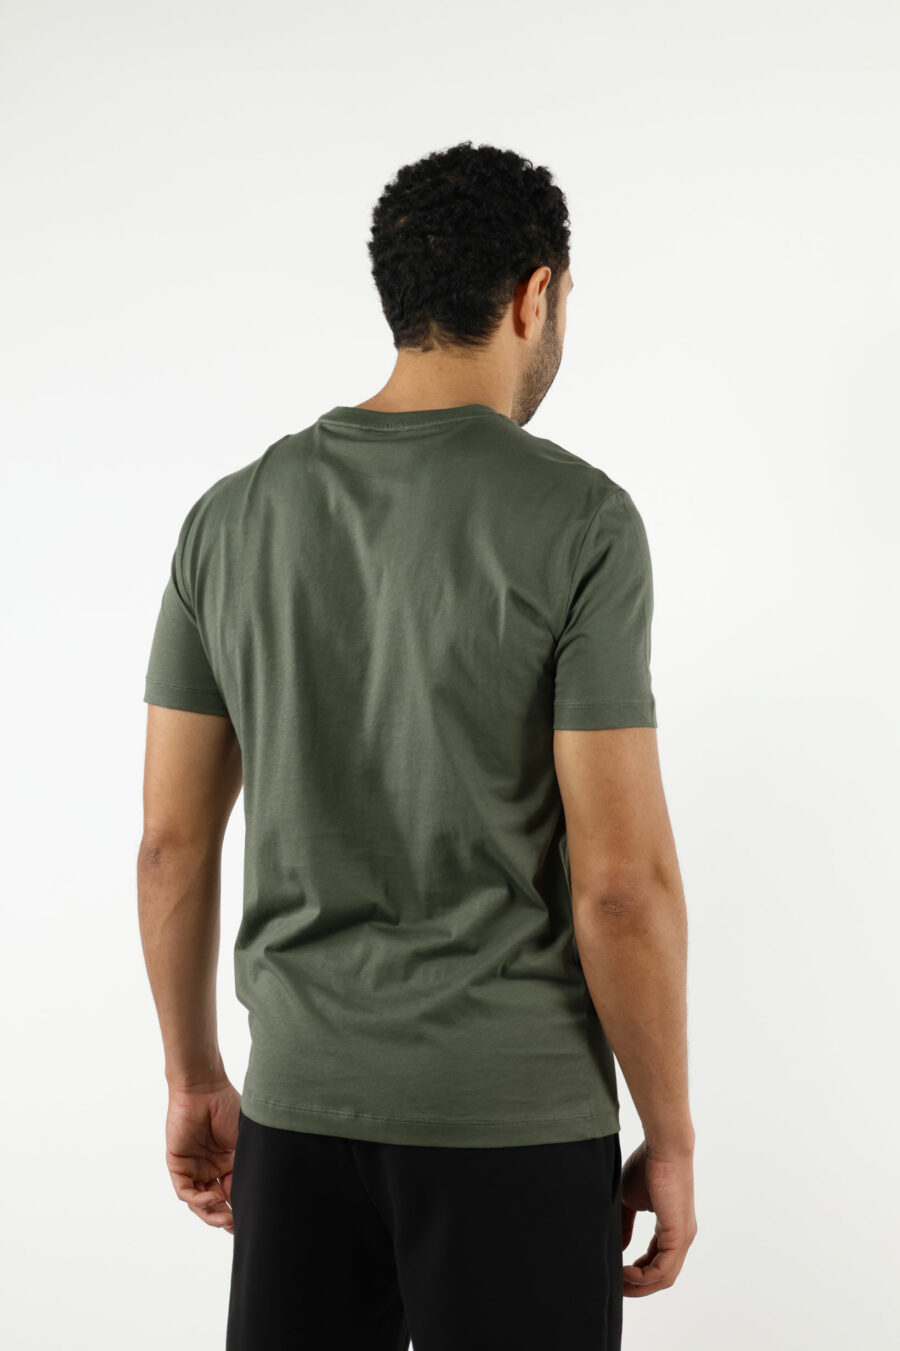 Camiseta verde con minilogo "lux identity" negro en placa dorada - 110879